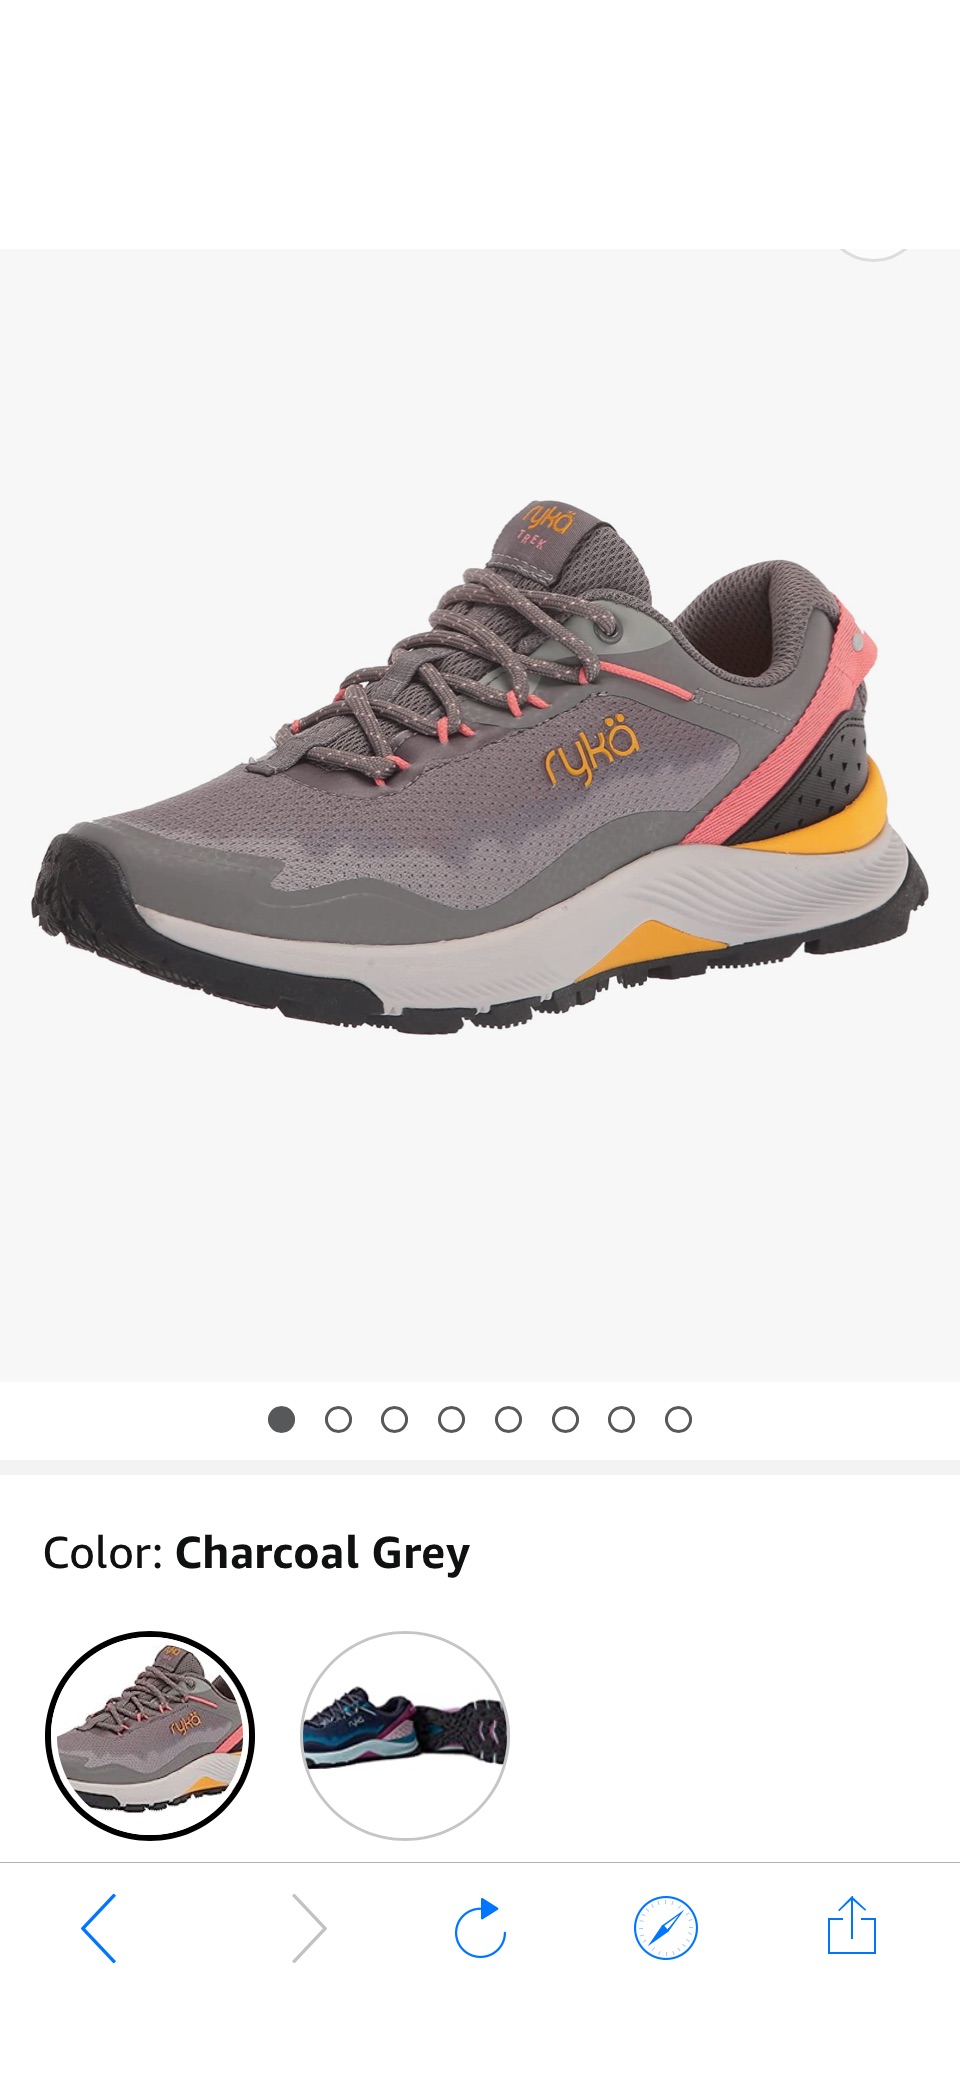 Amazon.com | Ryka Women's Trek Hiking Shoe, Charcoal Grey, 10 | Hiking Shoes原价145